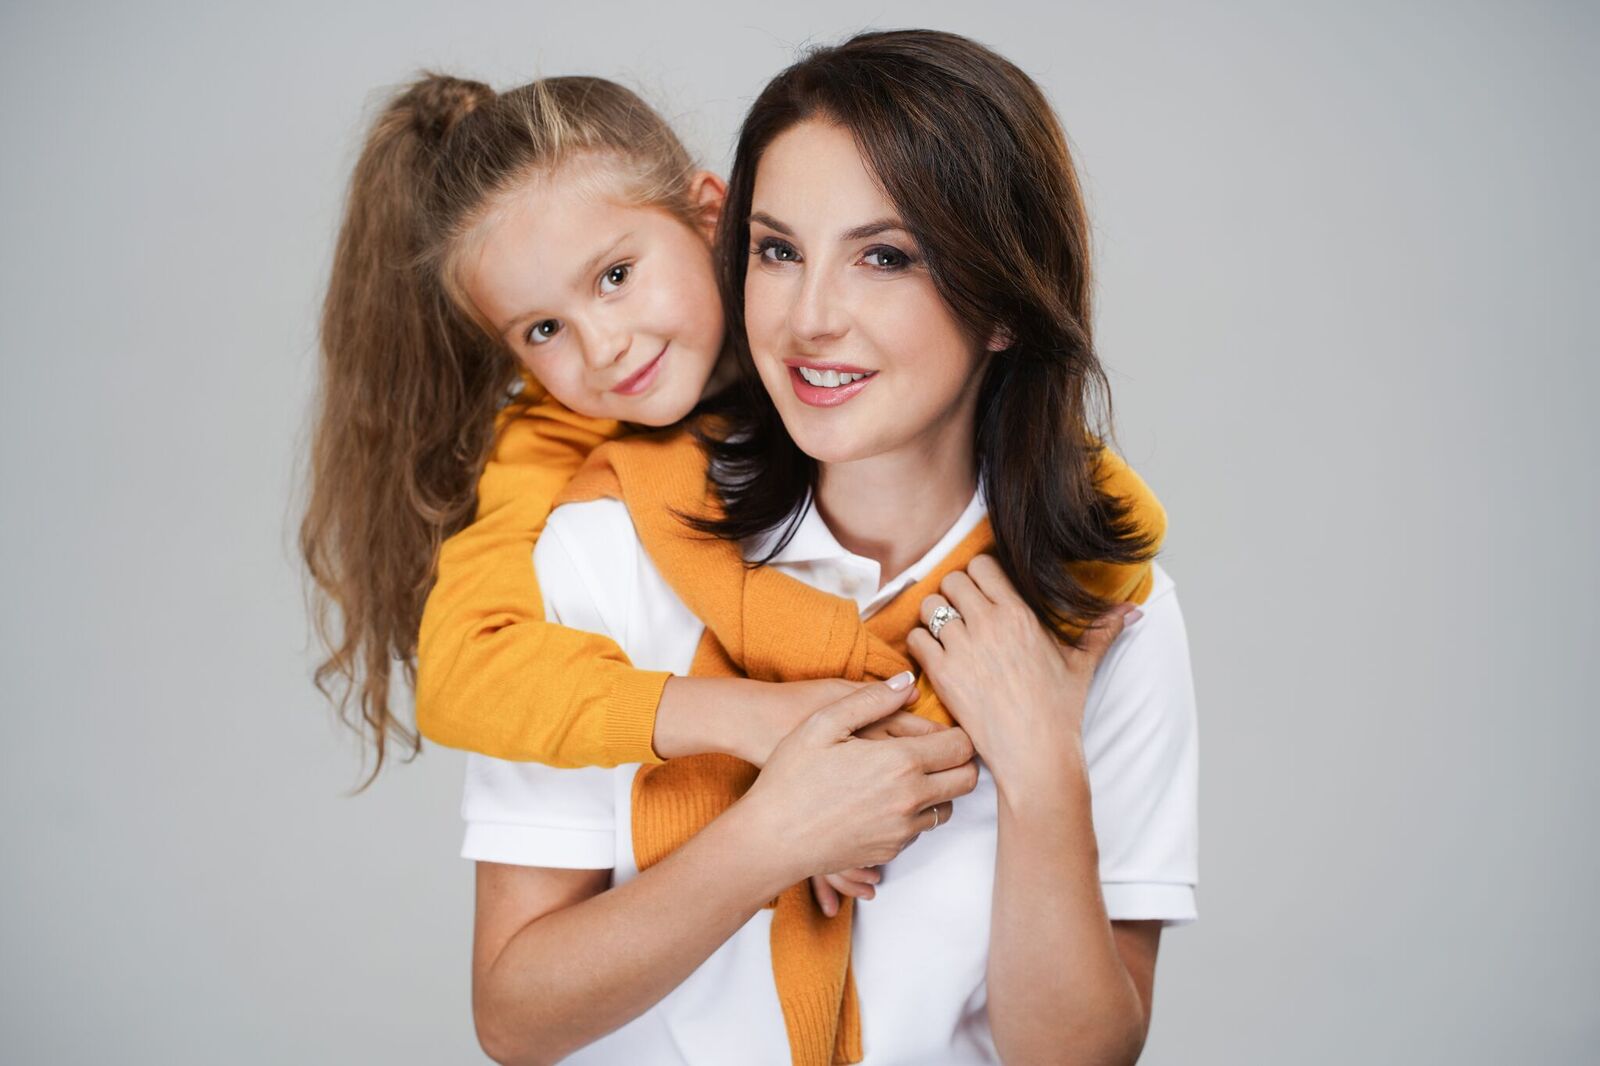 Ирина Слуцкая: «Для меня важно воспитать детей честными, ответственными, целеустремлёнными»